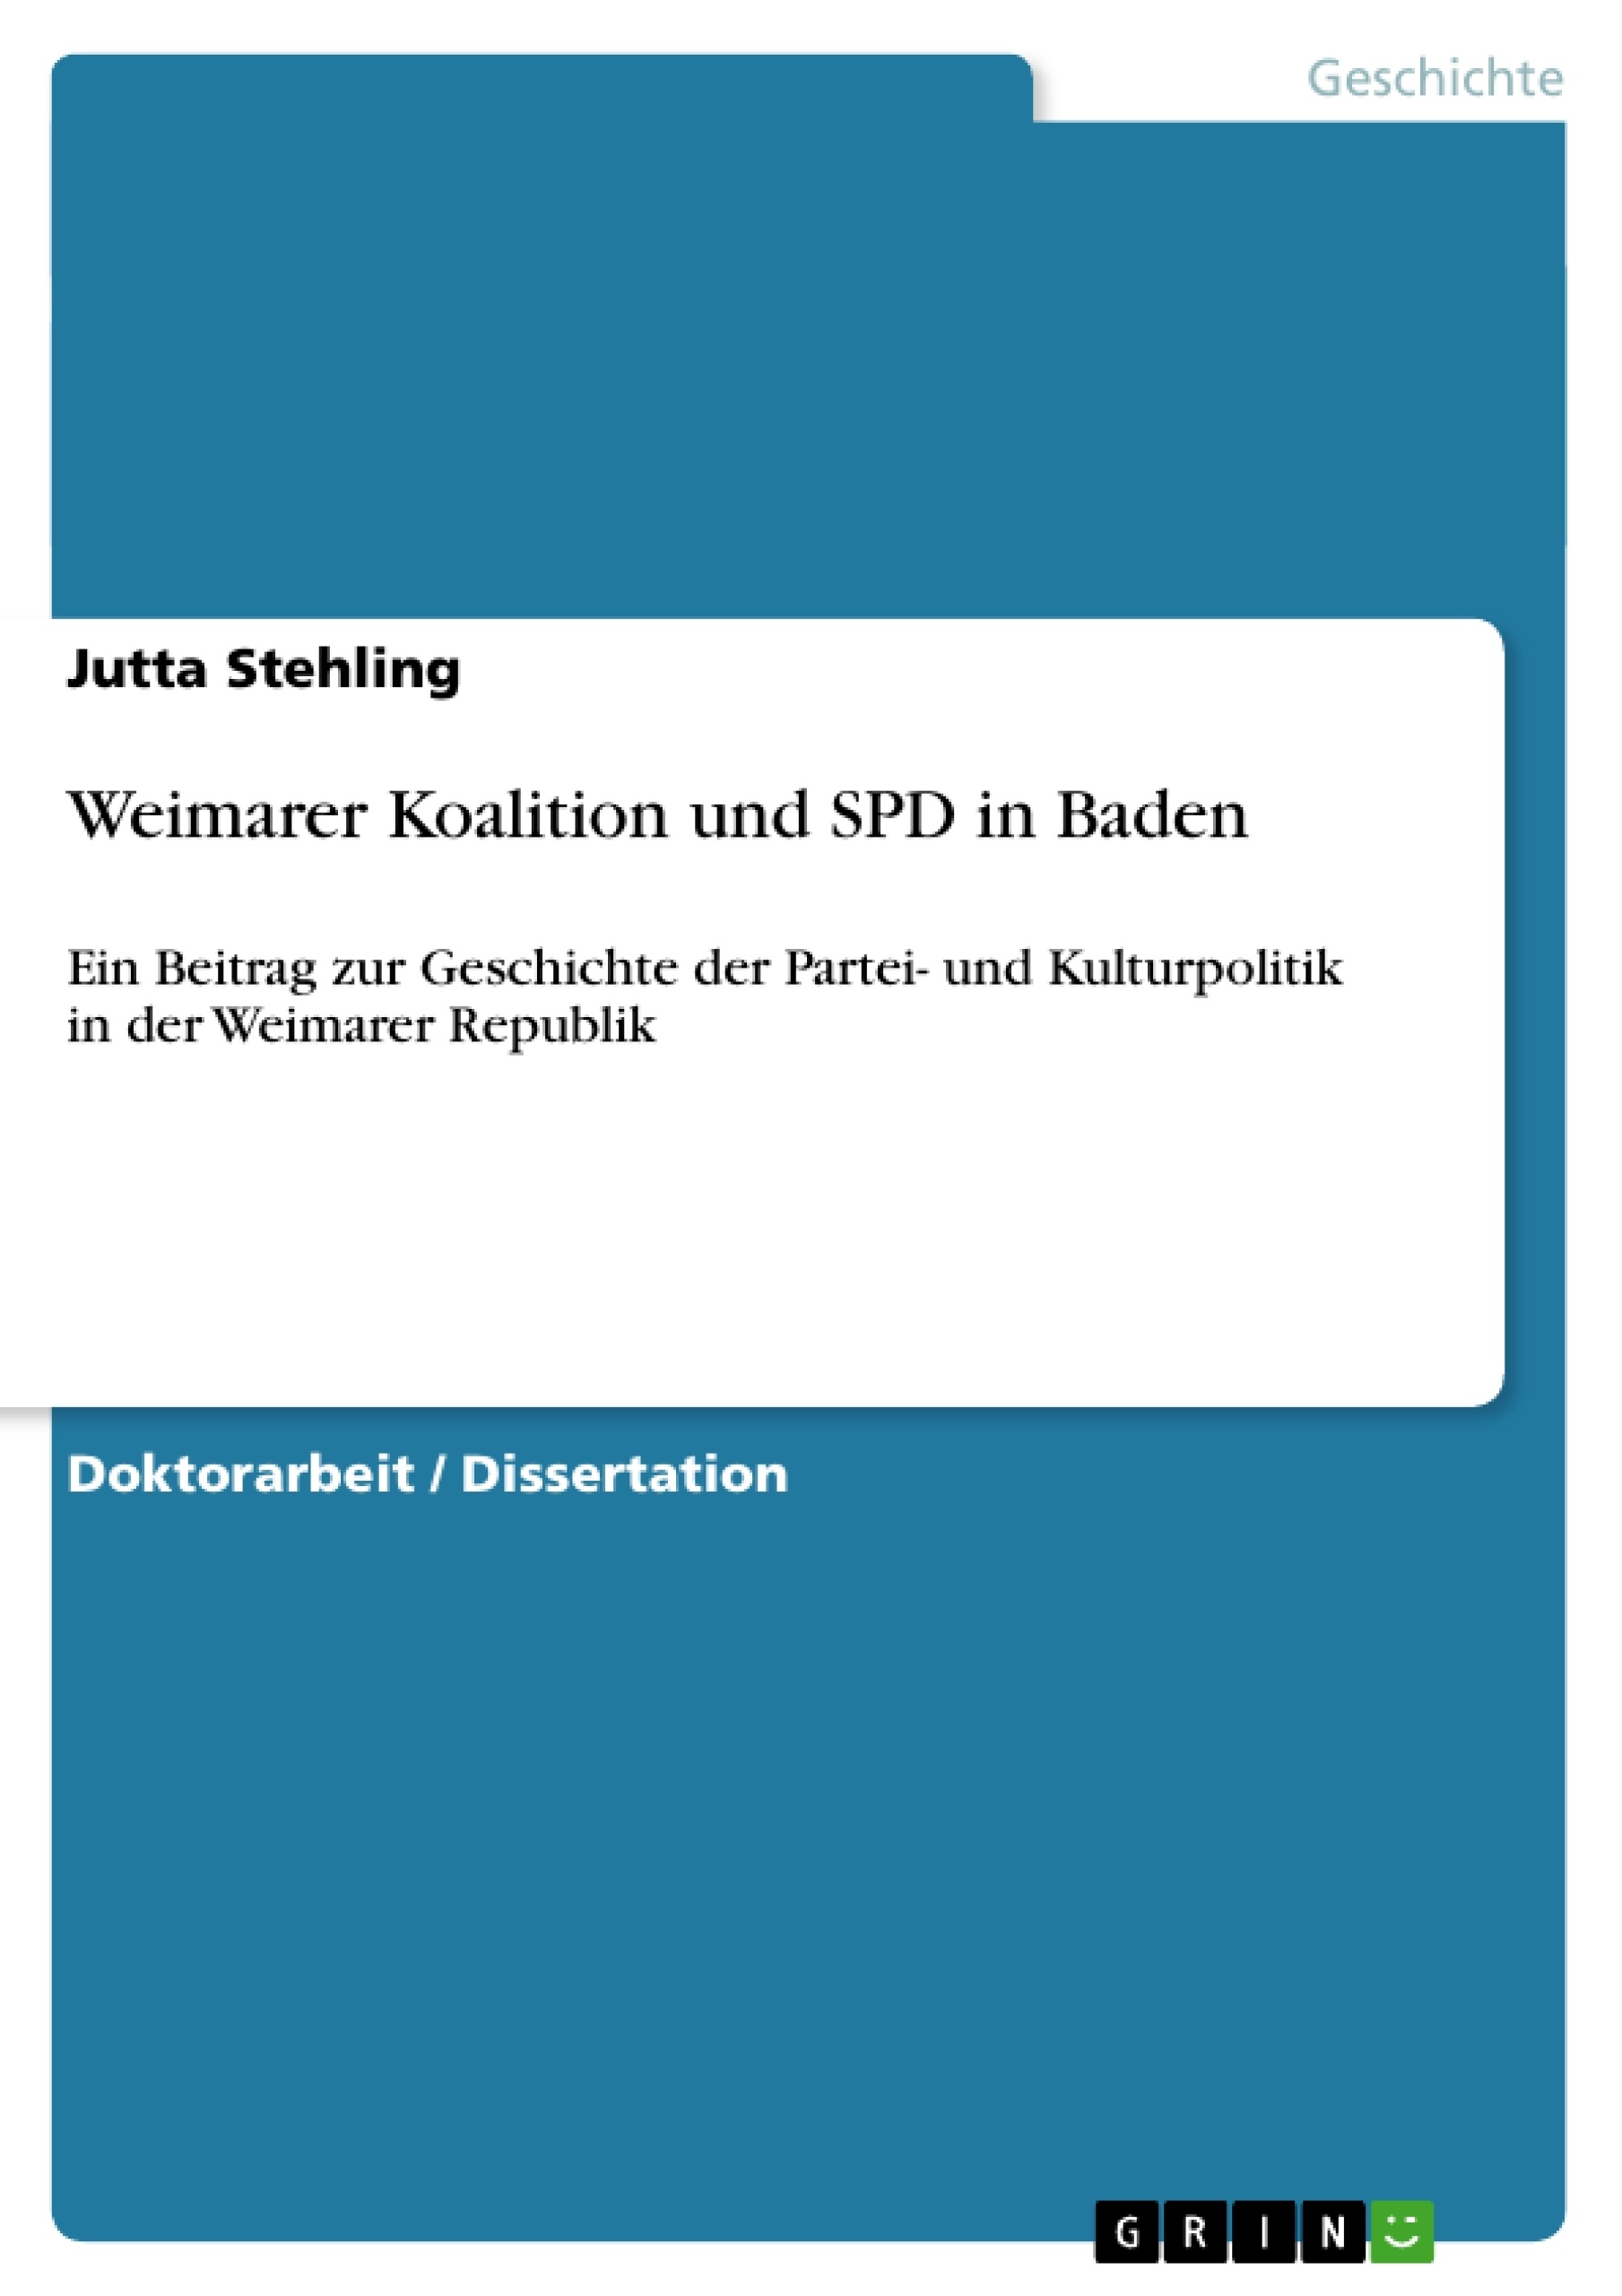 Título: Weimarer Koalition und SPD in Baden